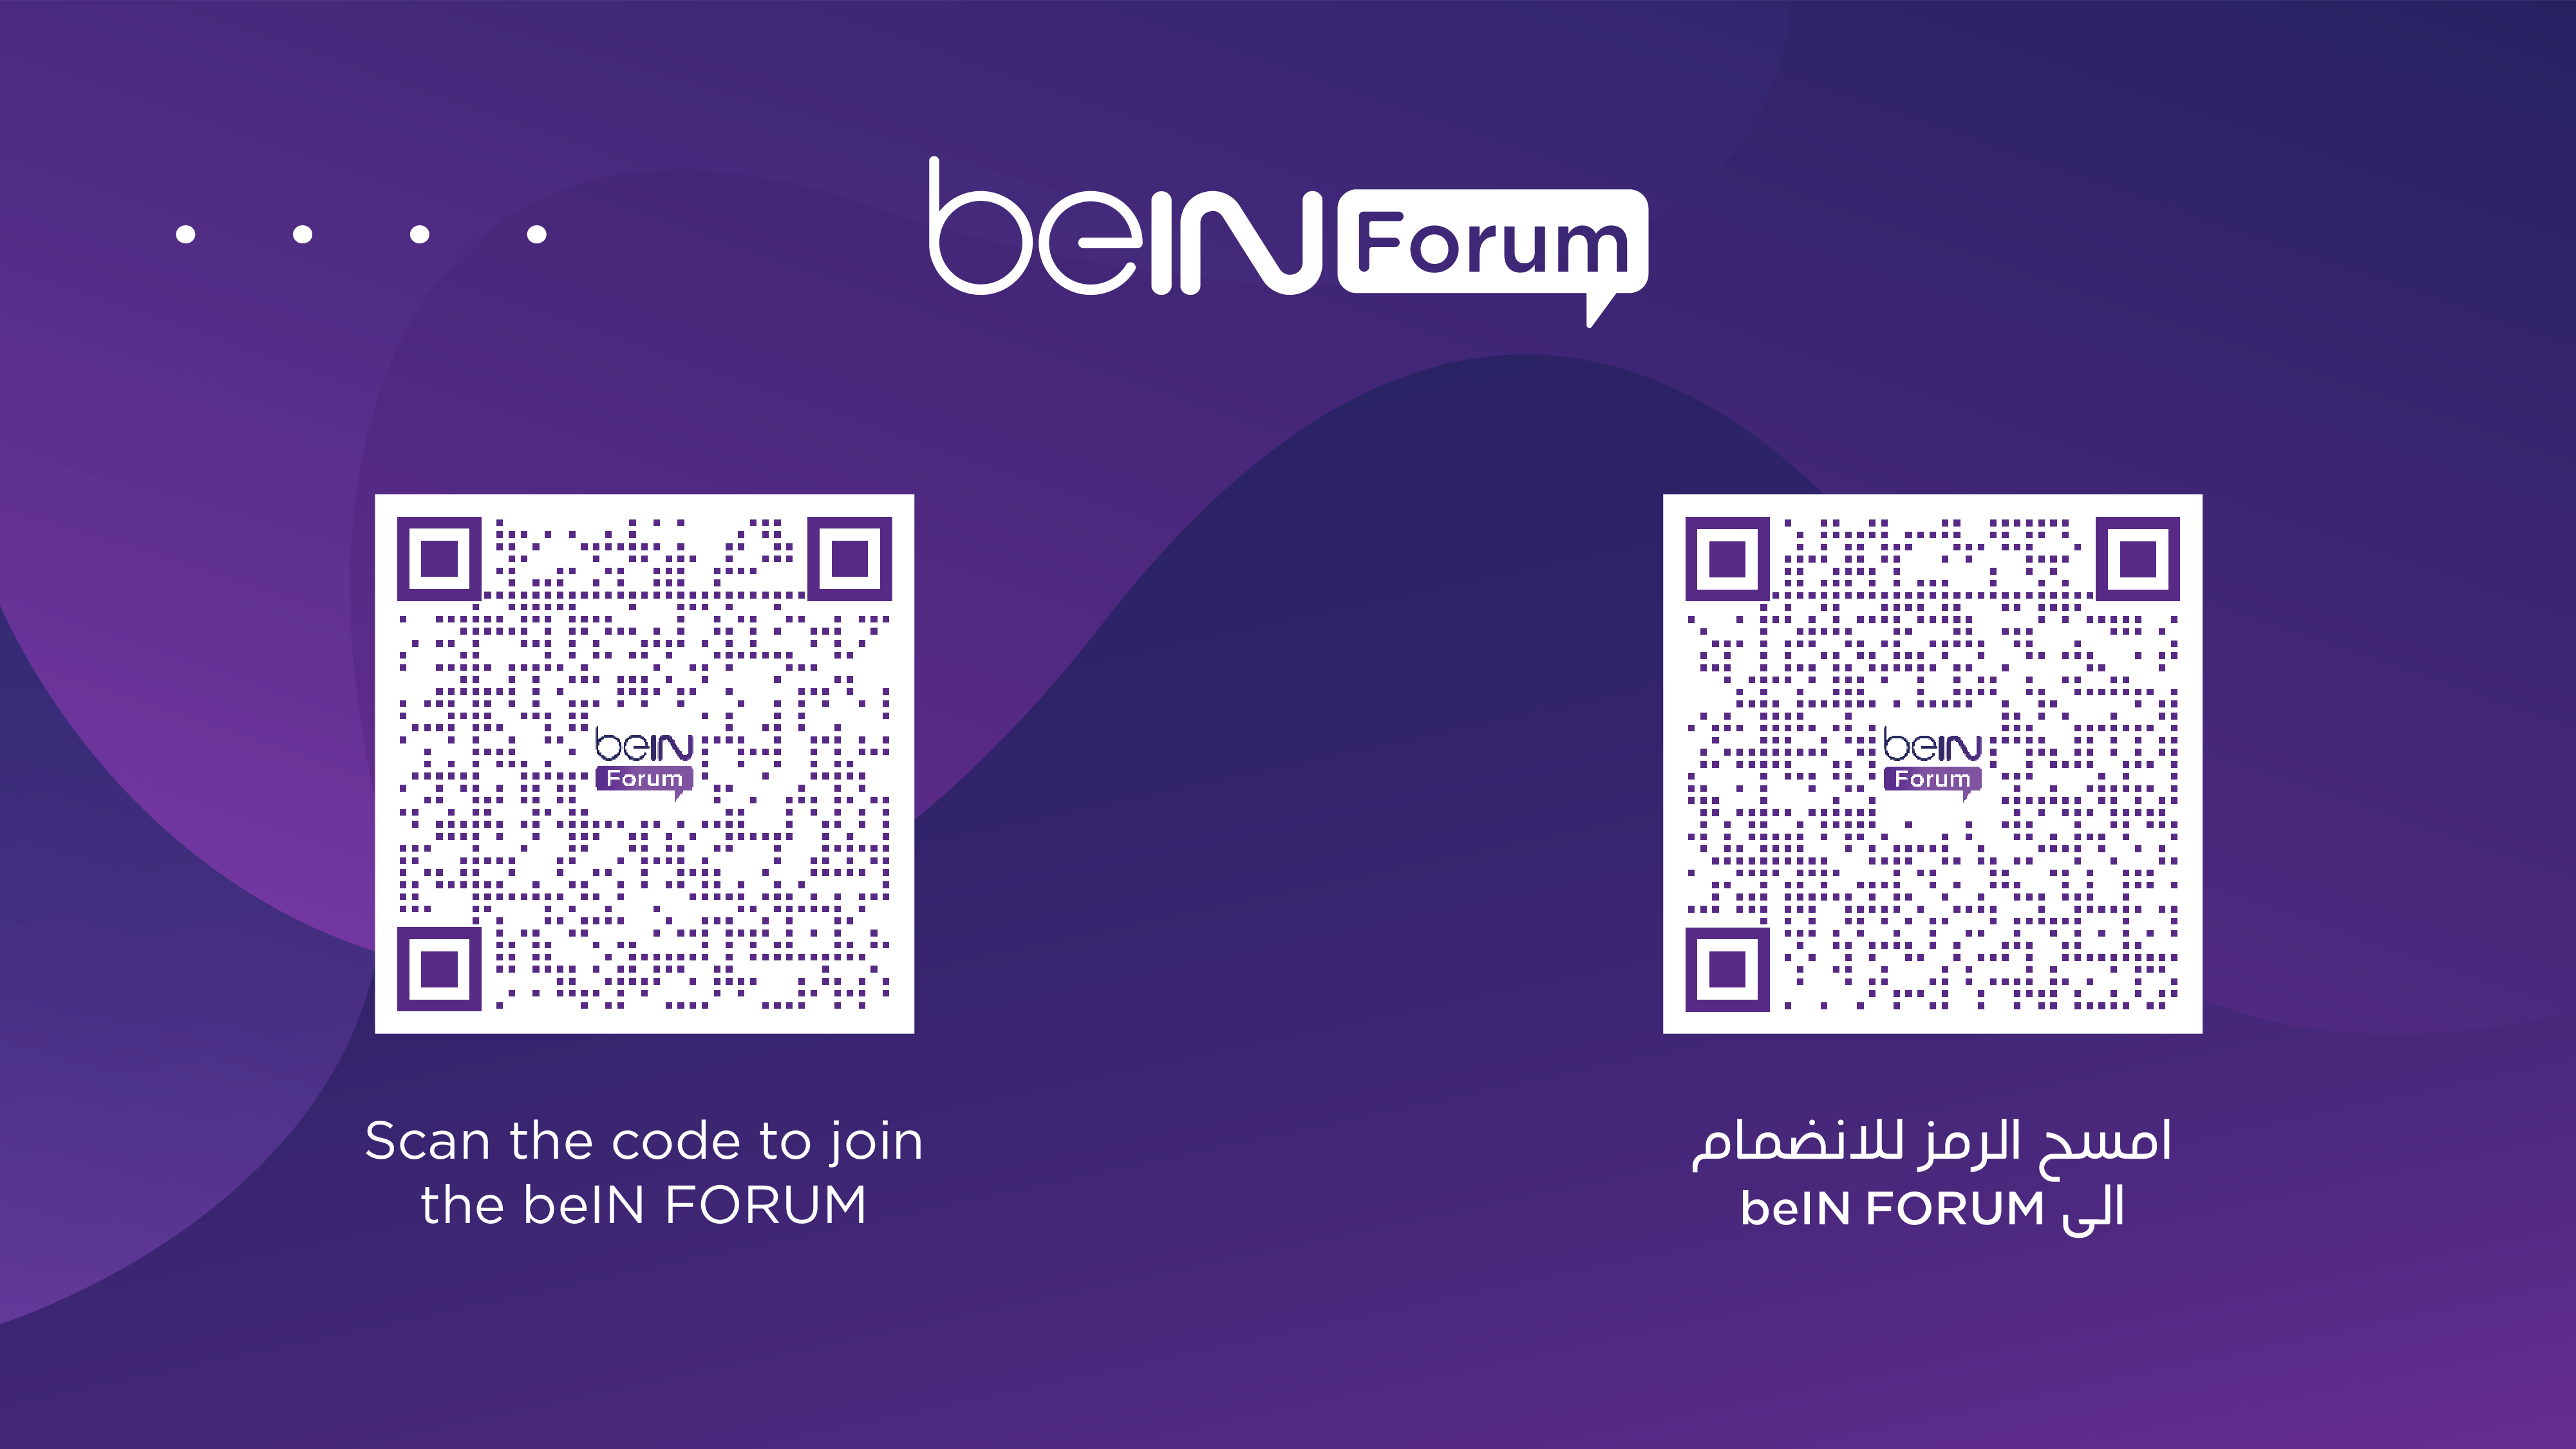 مجموعة beIN الإعلامية تستقبل آلاف طلبات التسجيل في منتدى beIN FORUM الحصري